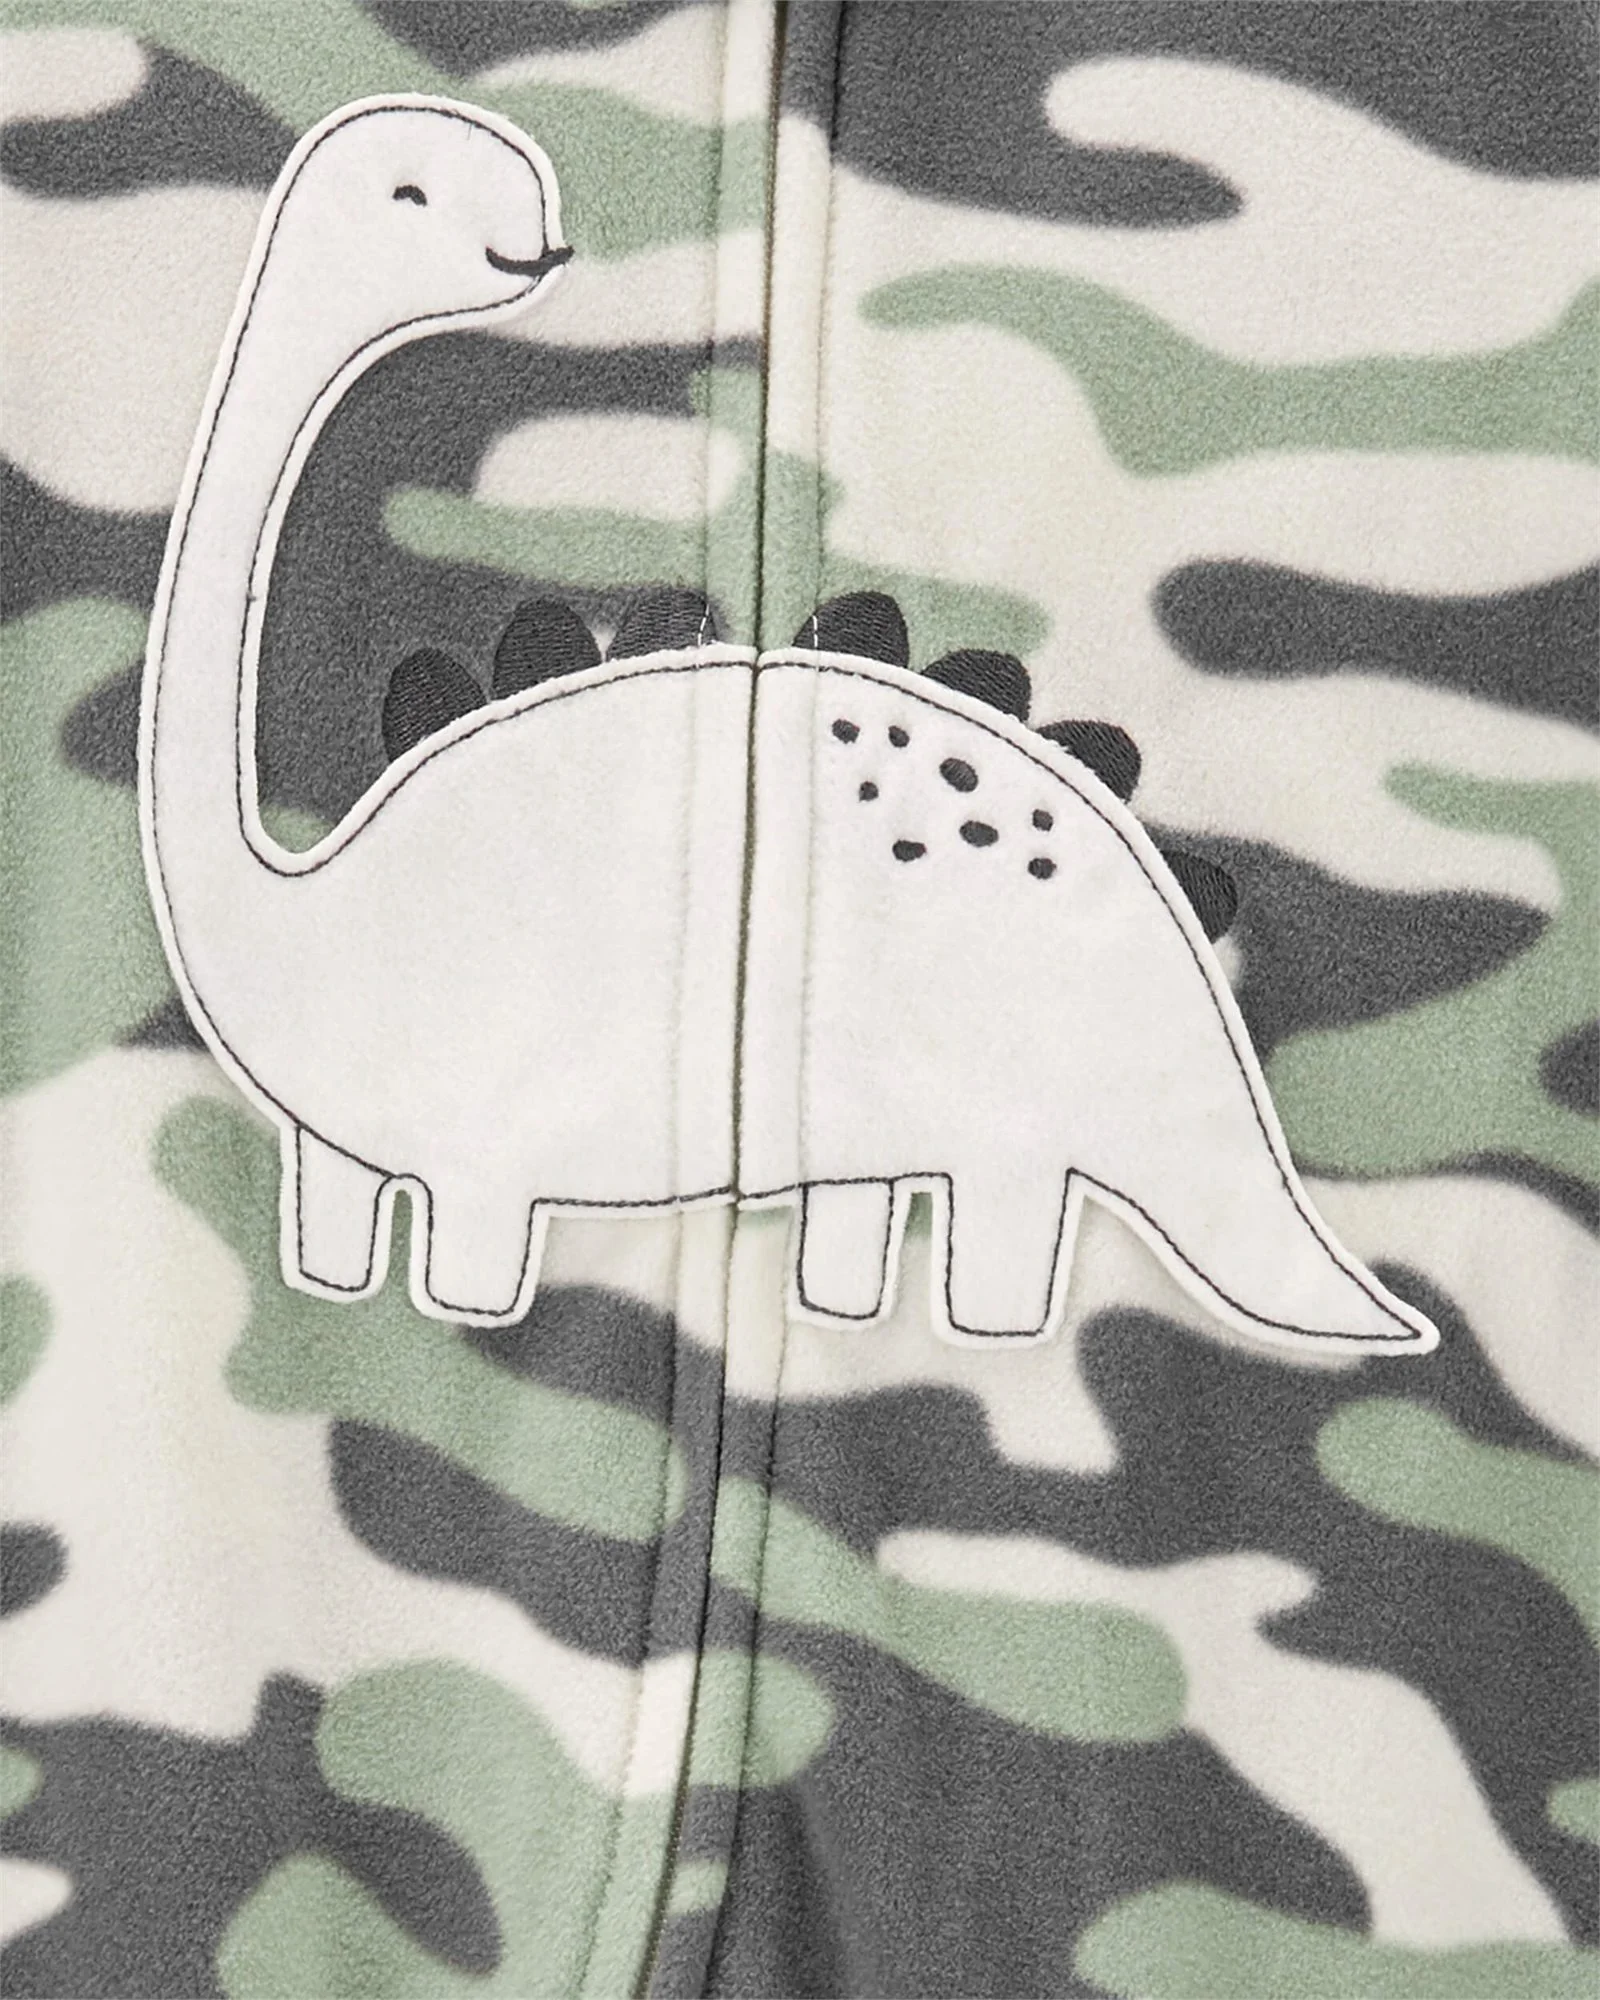 Carter's Pijama Fleece Dinozaur